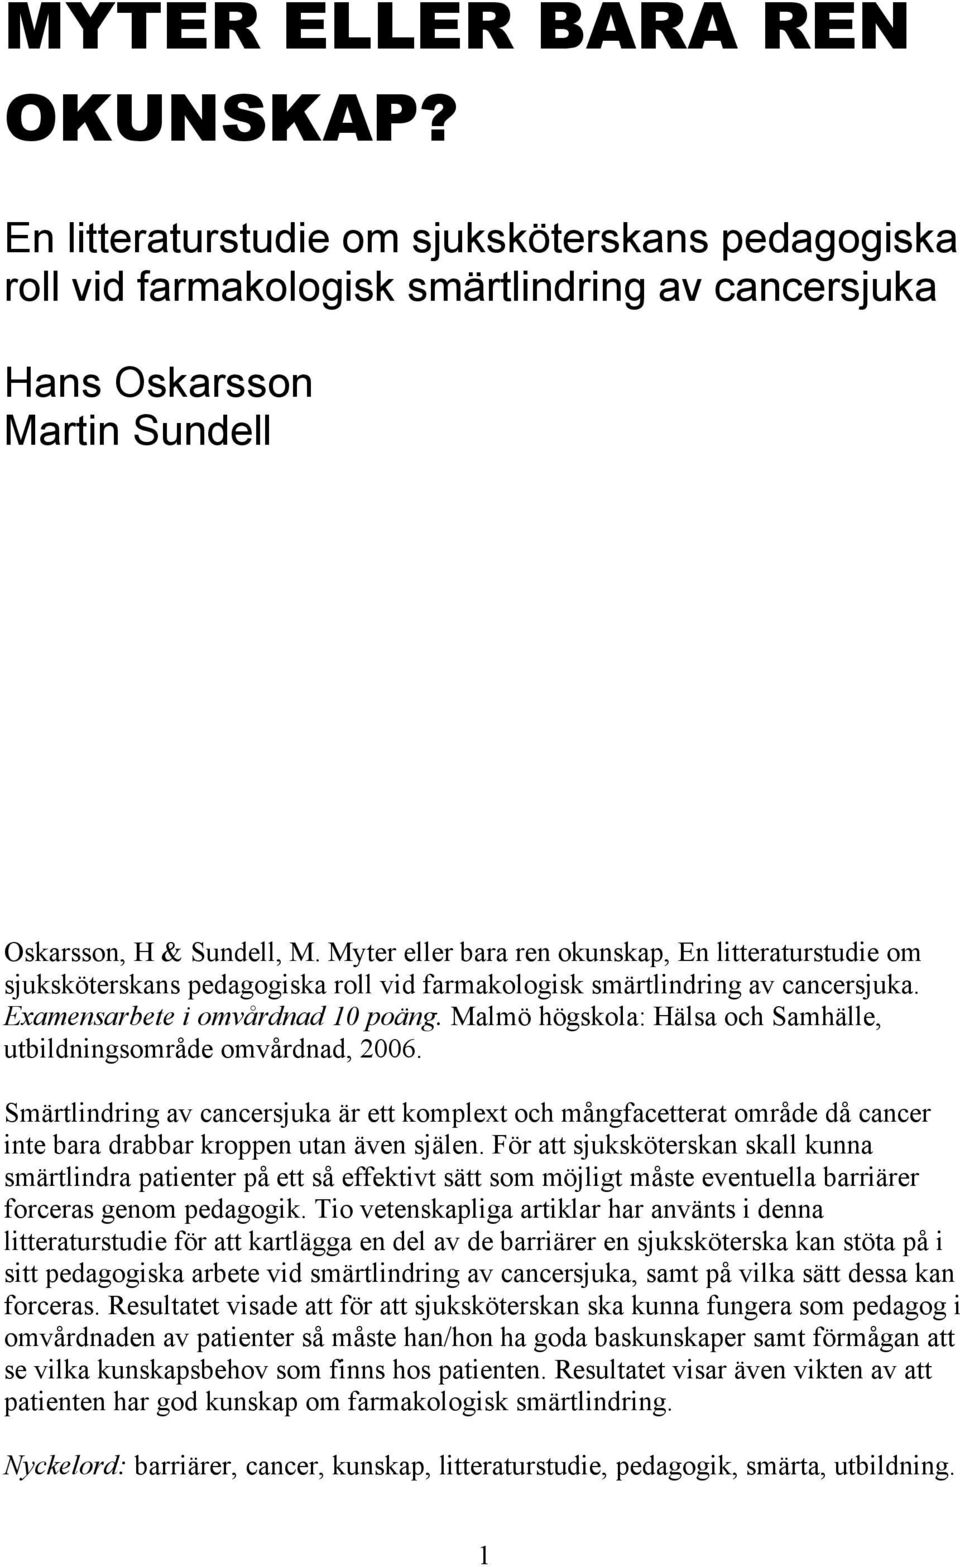 Malmö högskola: Hälsa och Samhälle, utbildningsområde omvårdnad, 2006. Smärtlindring av cancersjuka är ett komplext och mångfacetterat område då cancer inte bara drabbar kroppen utan även själen.